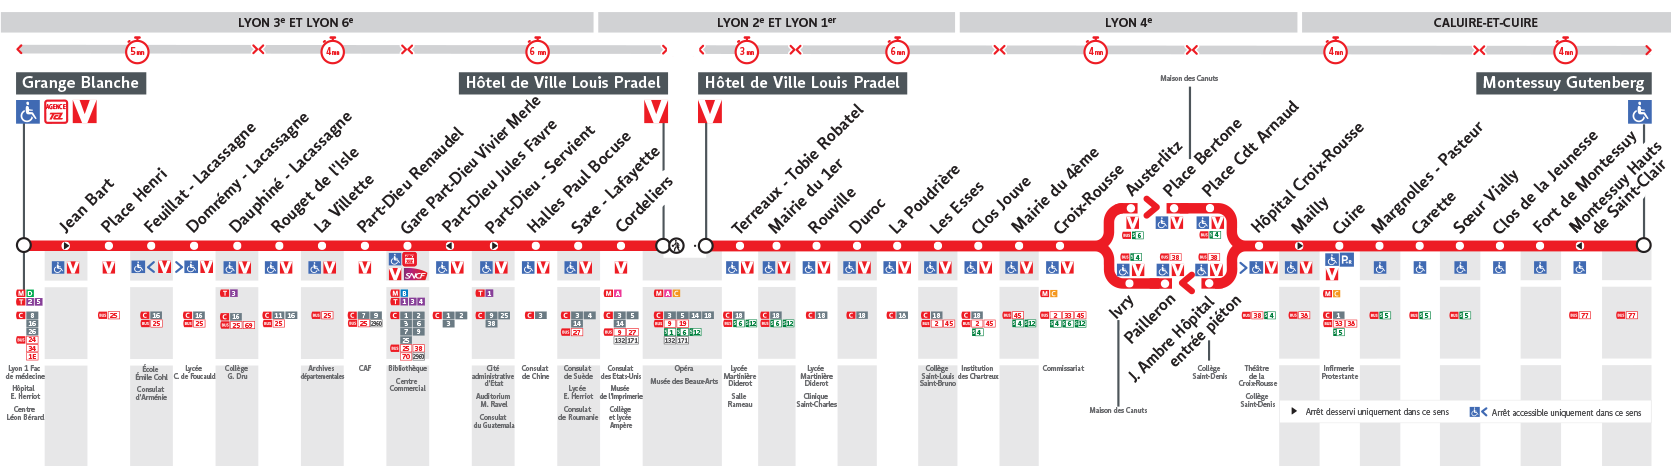 Расписание маршрута поезда 49. График RER означает.